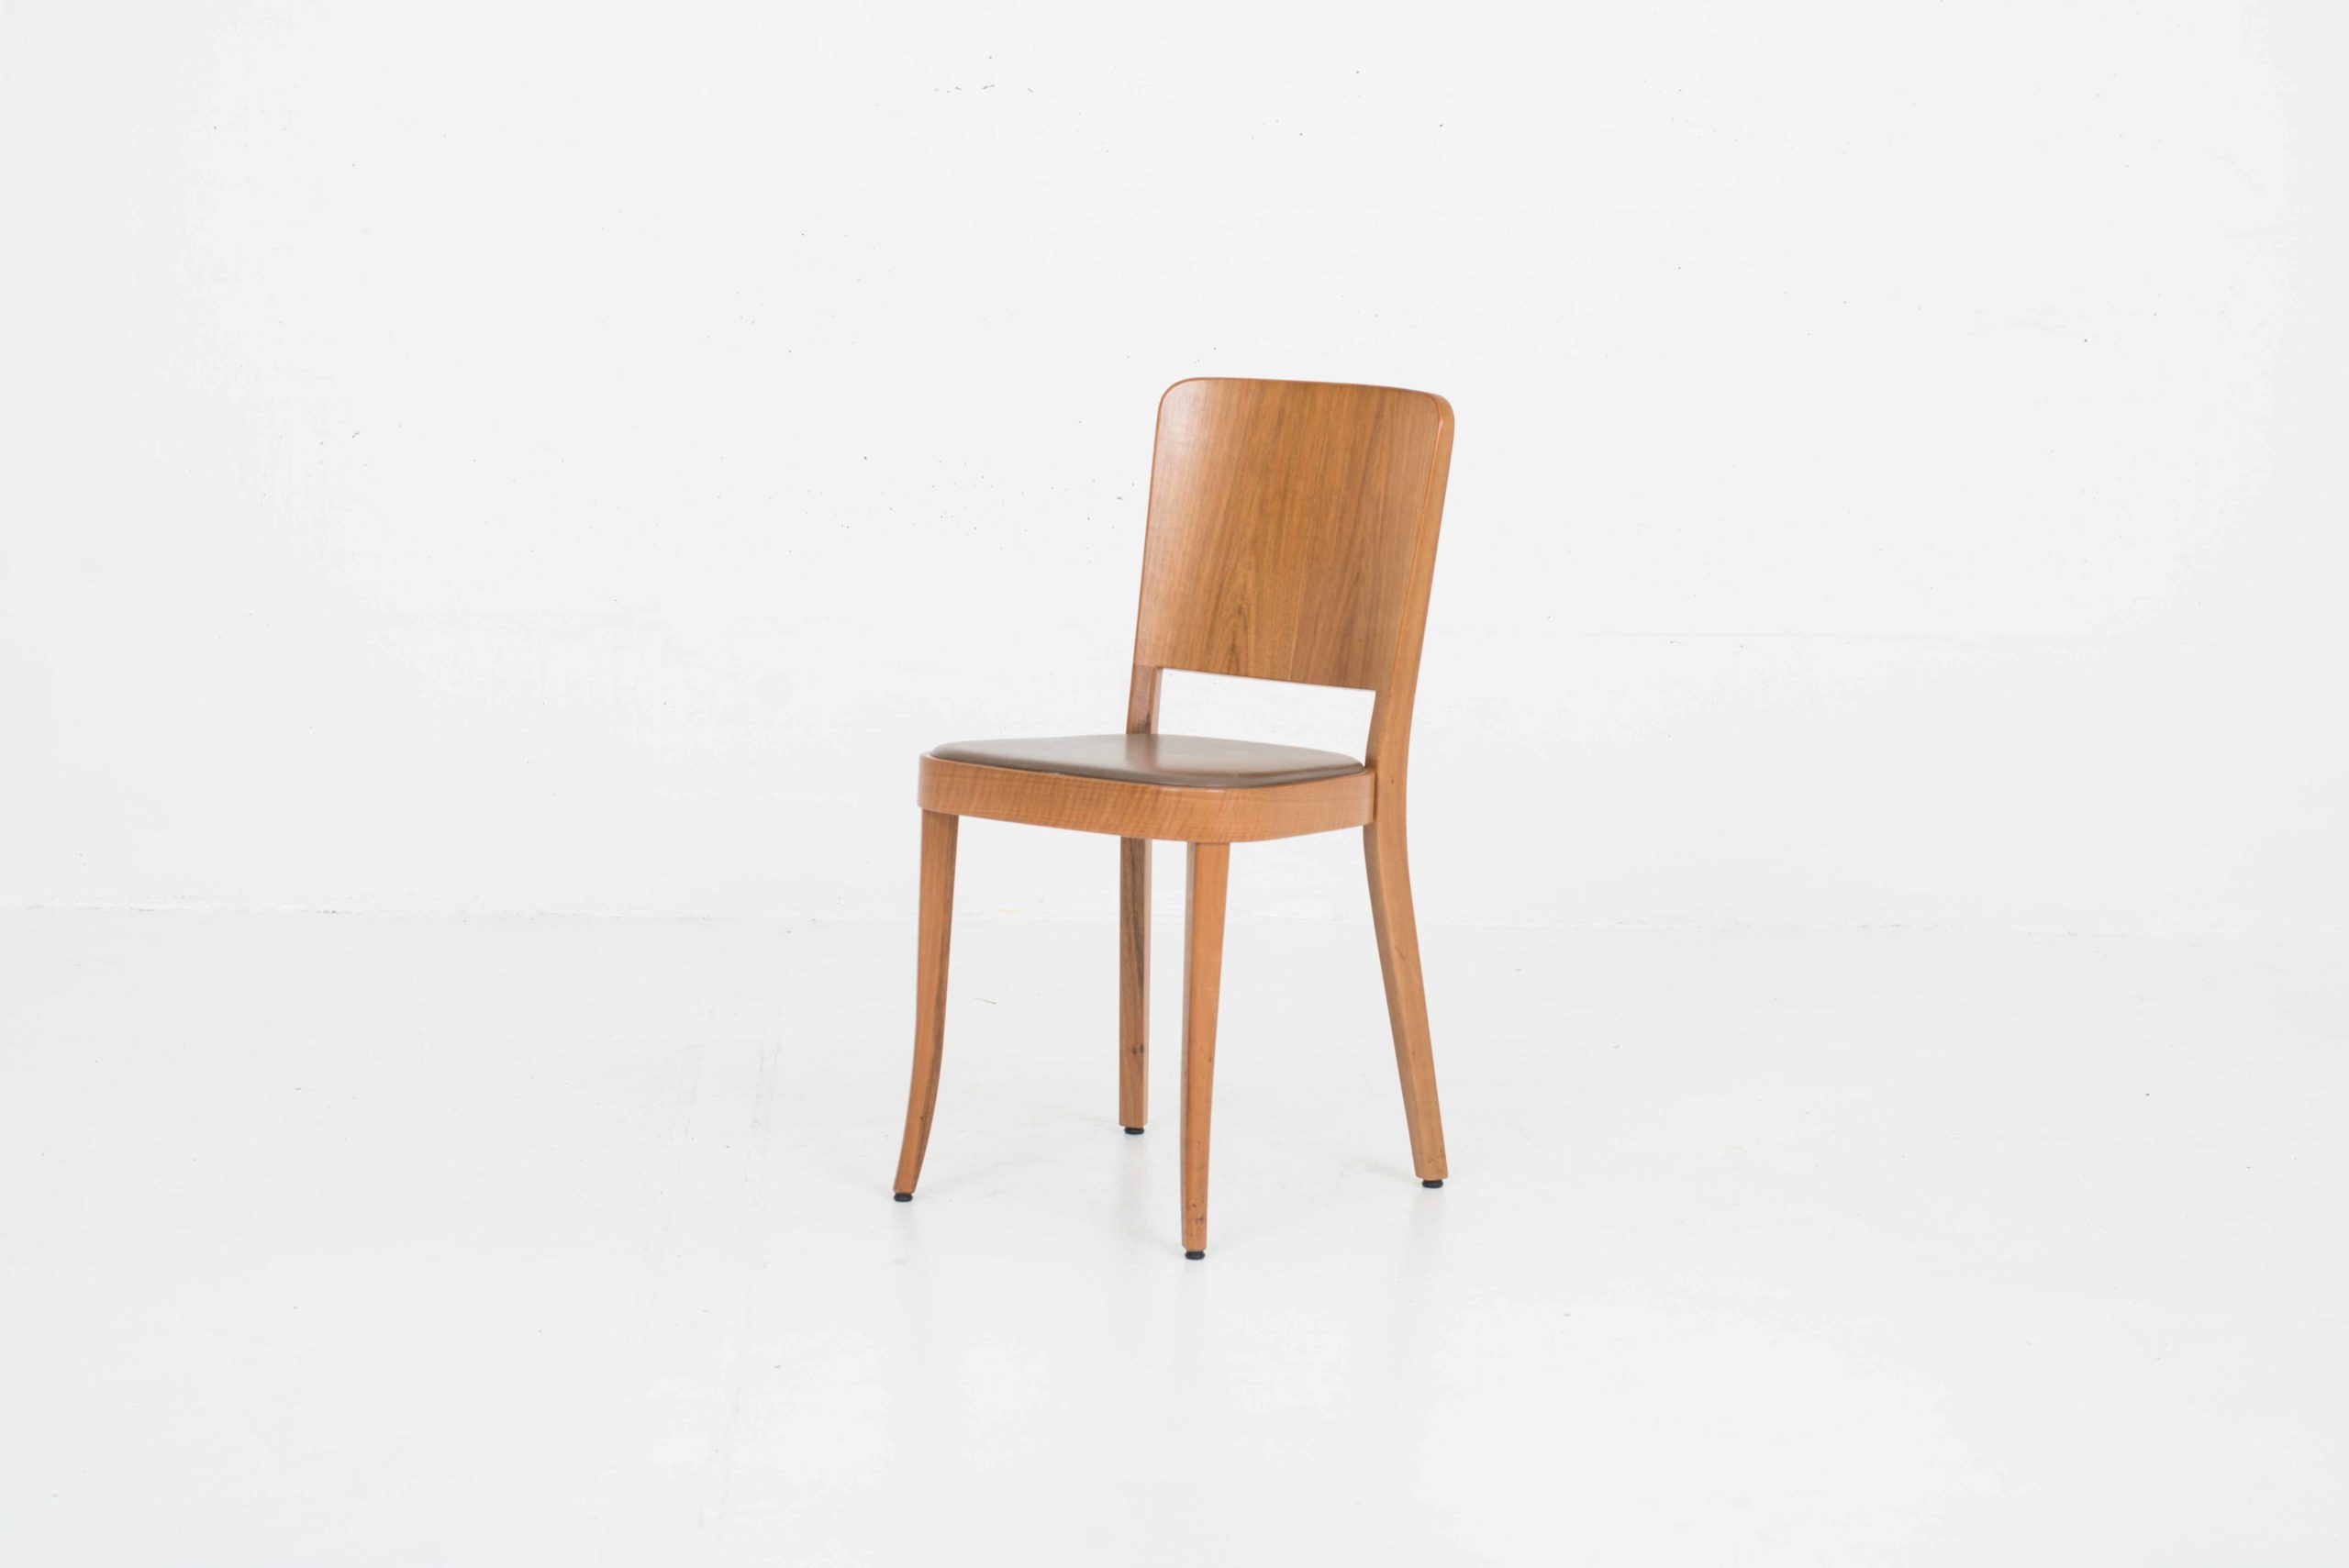 Horgenglarus 1-793 Stühle von Max Ernst Haefeli, im Zweierset-0